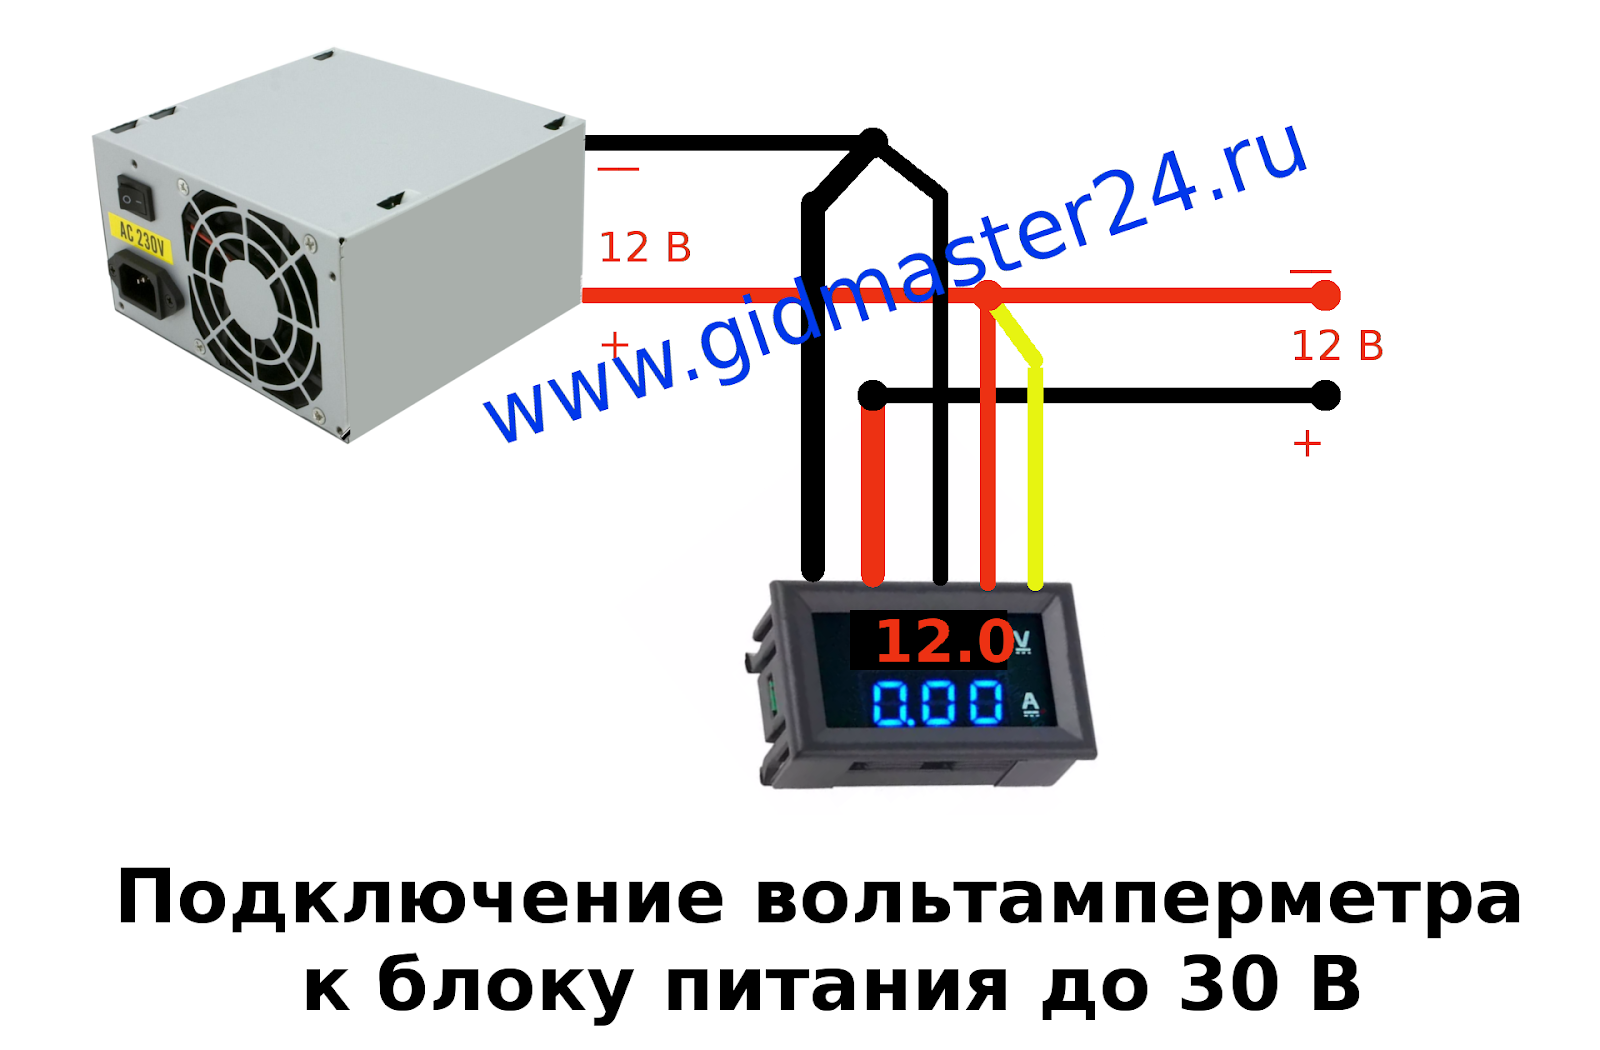  подключается: Подключение вольтамперметра DSN-VC288 100 вольт .